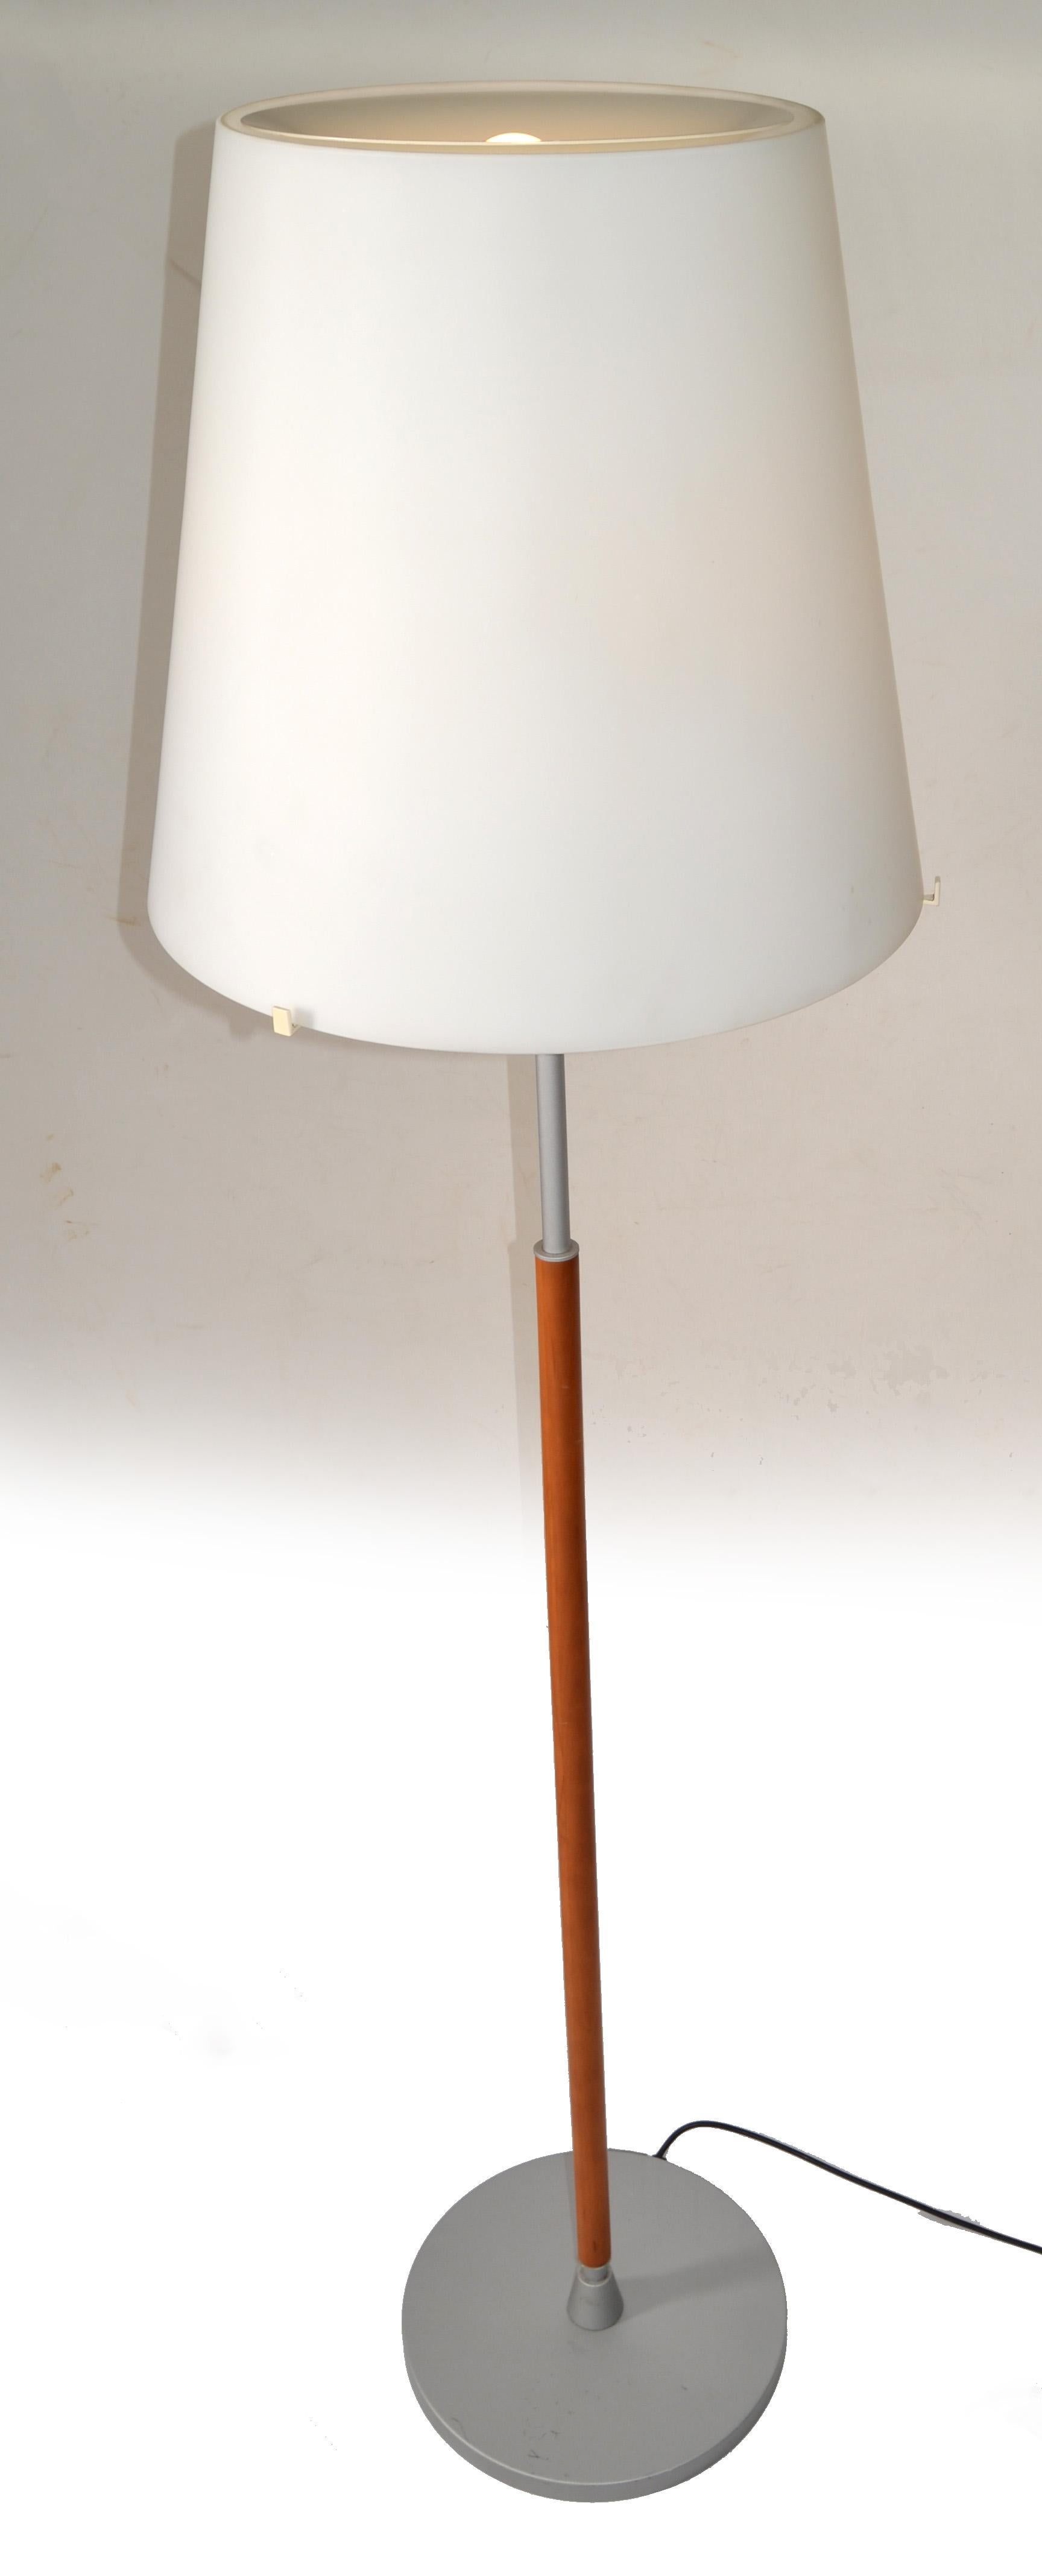 Un lampadaire moderniste, pur et élégant, conçu par Archivio Storico pour Fontana Arte. Le modèle 2198 de Fontana Arte est un lampadaire classique. Le diffuseur est en verre soufflé blanc satiné. La tige est en poirier doré, tandis que la base est